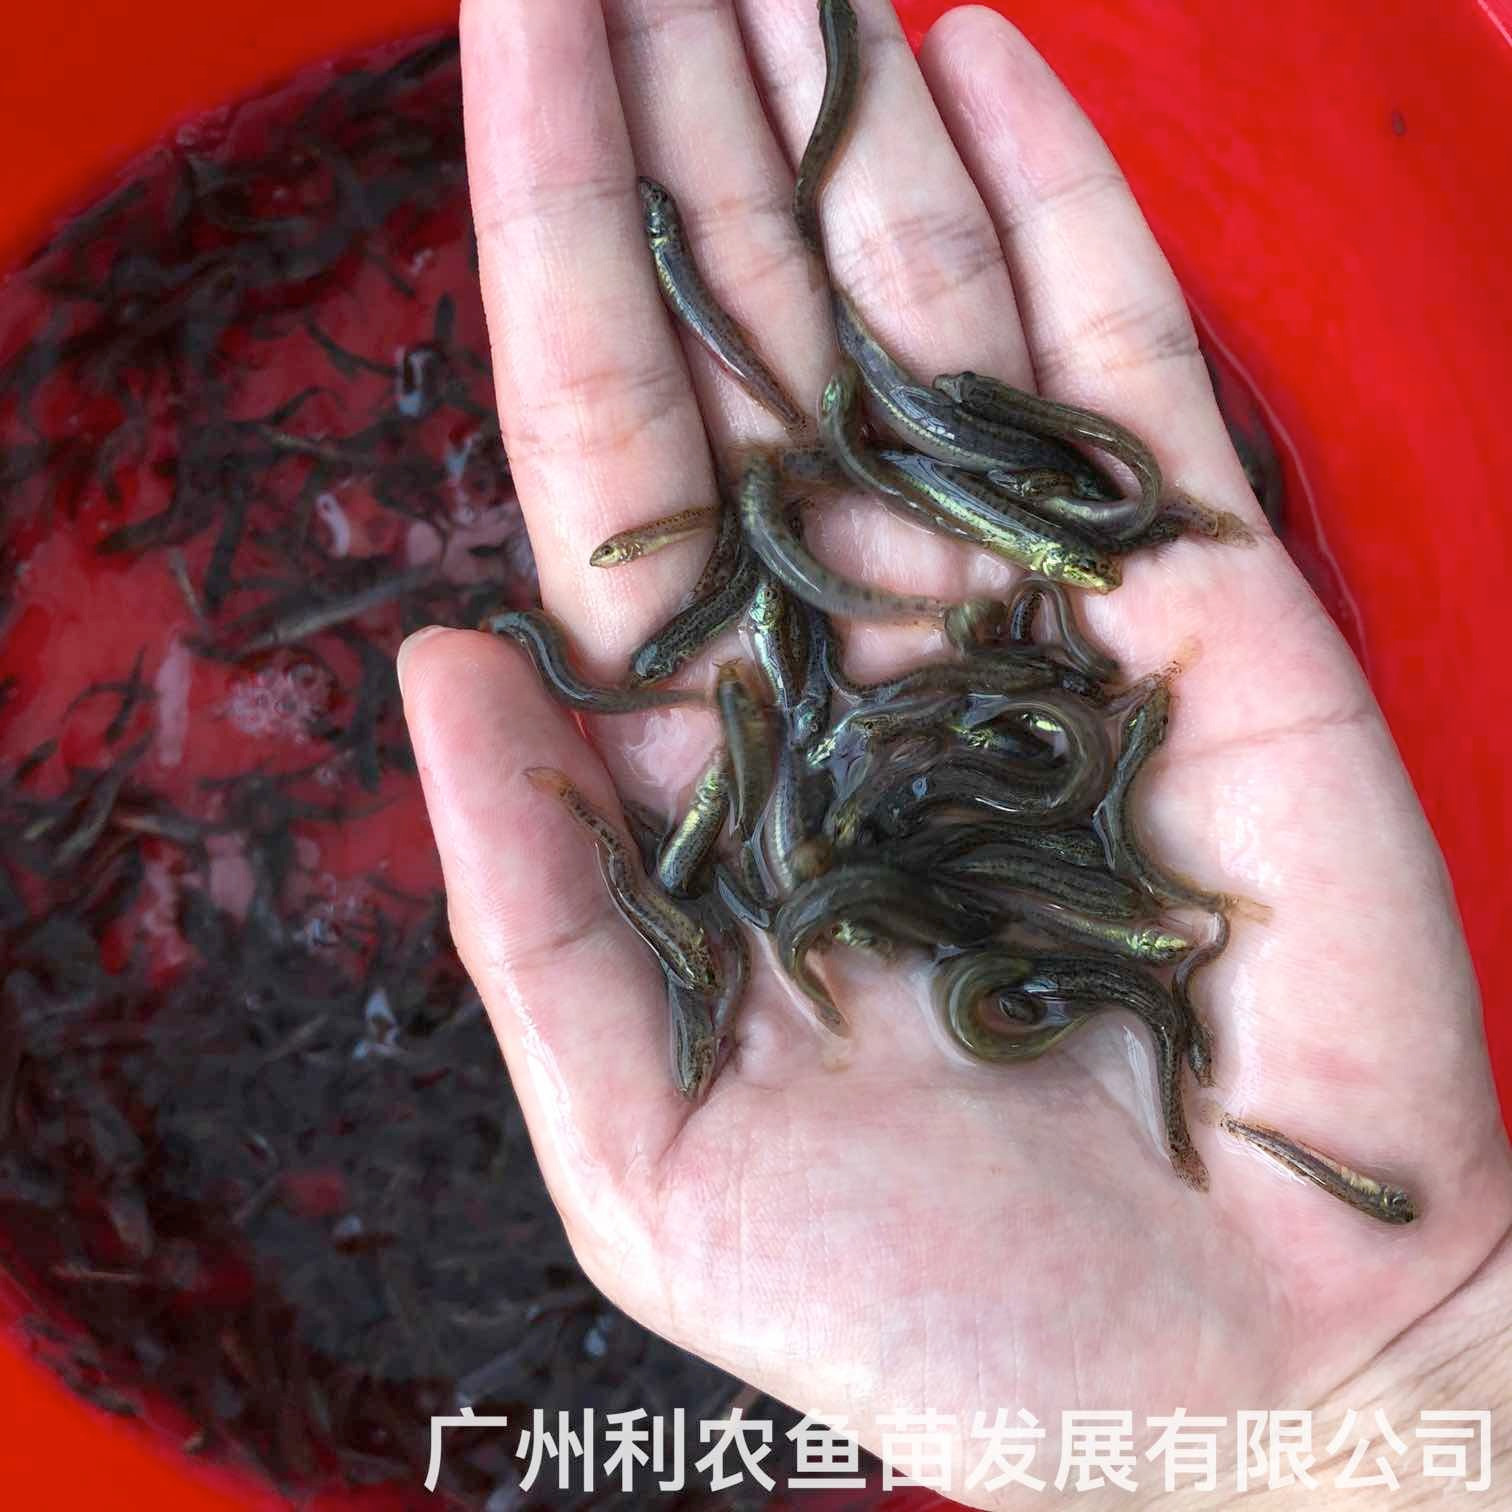 广西崇左台湾泥鳅苗出售出售价格广西河池泥鳅鱼苗批发养殖基地